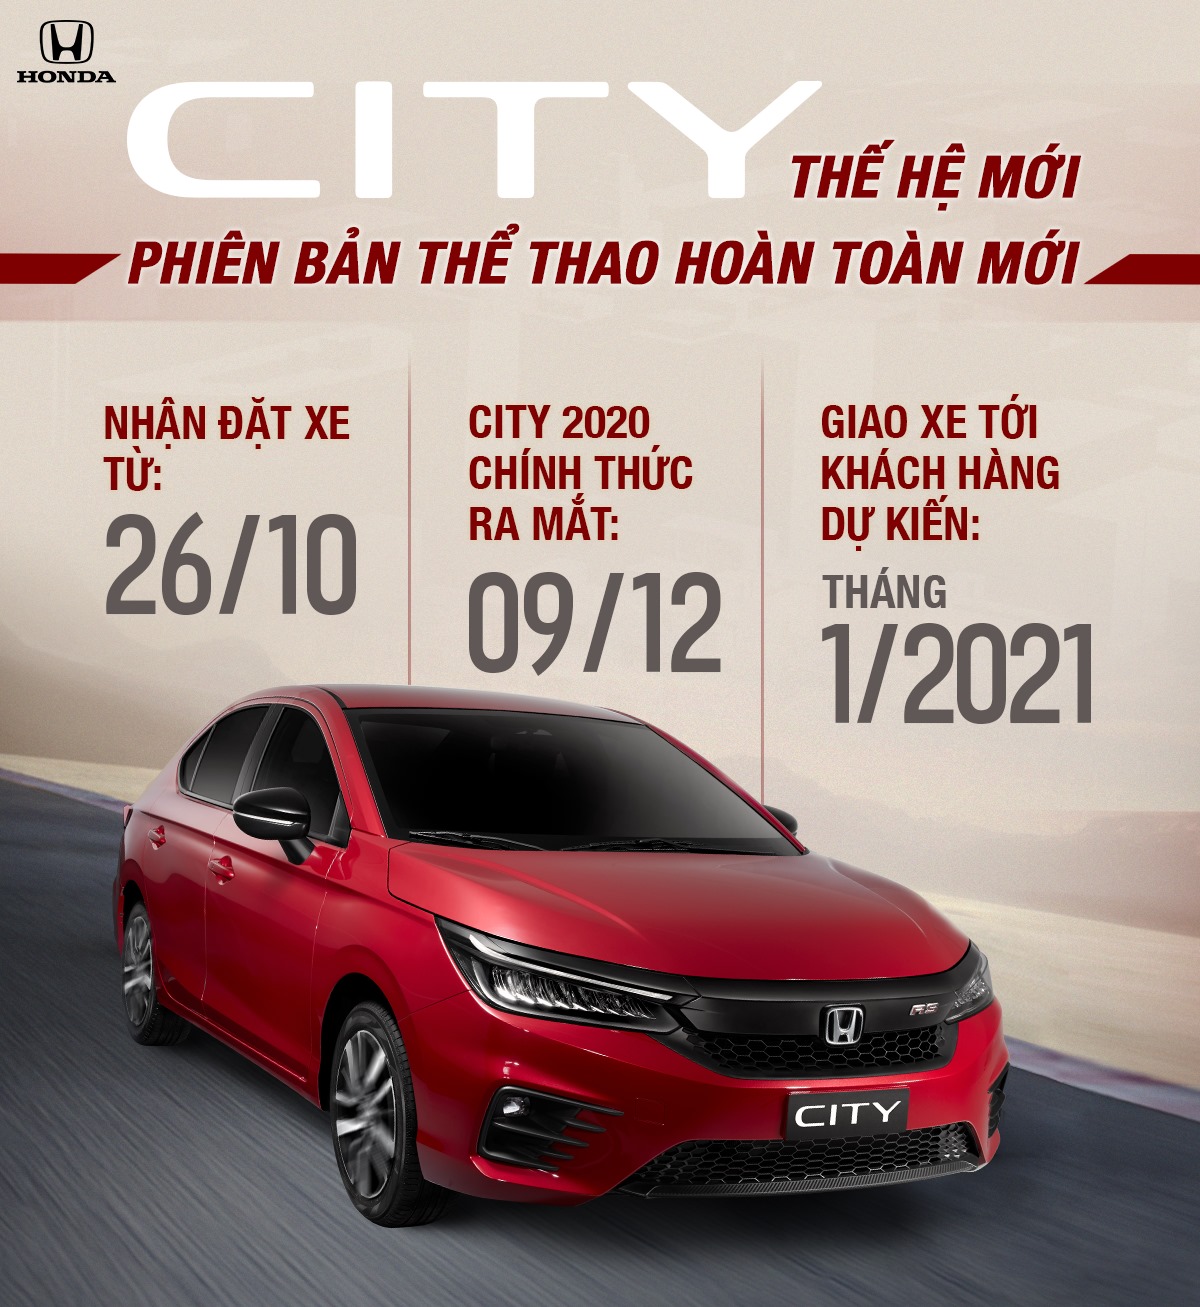 Honda City 2020 tại Việt Nam lộ nội thất và động cơ mới trước giờ G: Lột xác thành ‘tiểu’ Accord, mạnh nhất phân khúc - Ảnh 7.